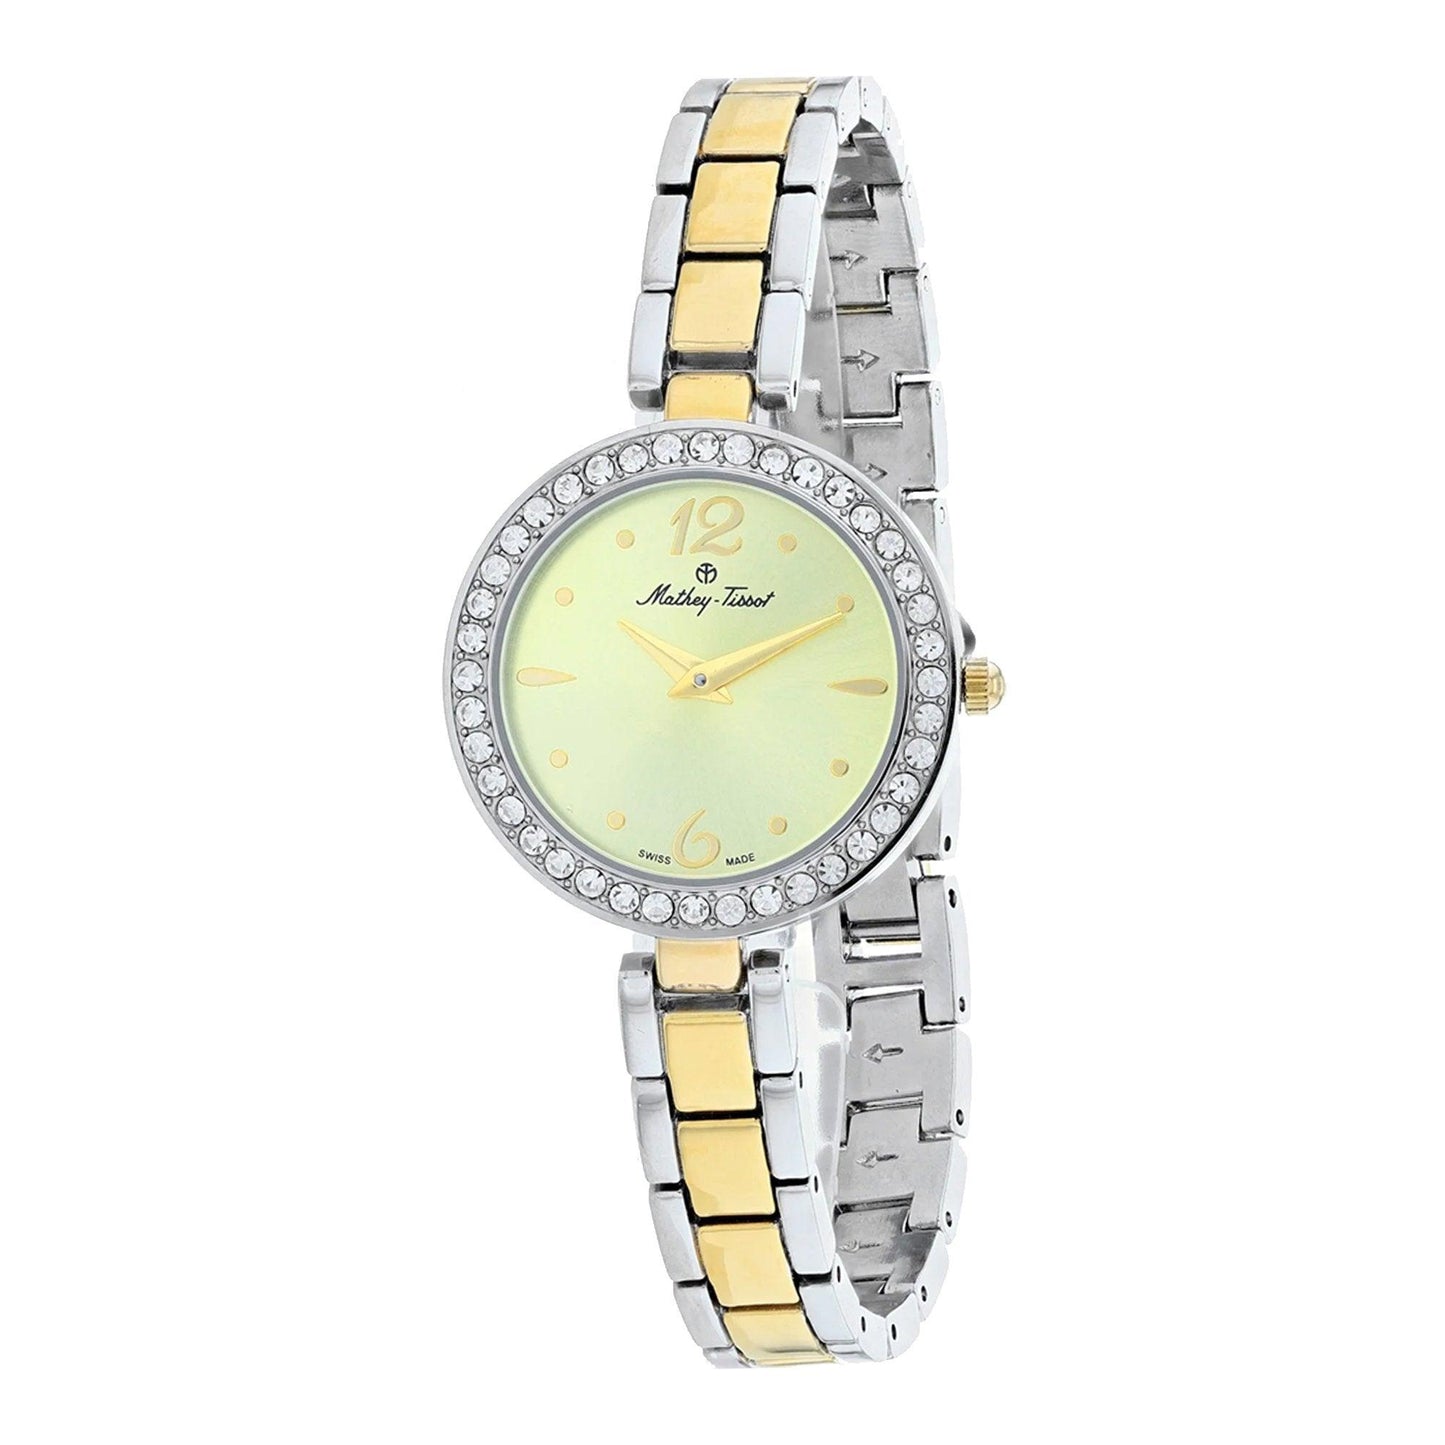 Mathey-Tissot Fleury D6506BDI orologio donna al quarzo - Kechiq Concept Boutique